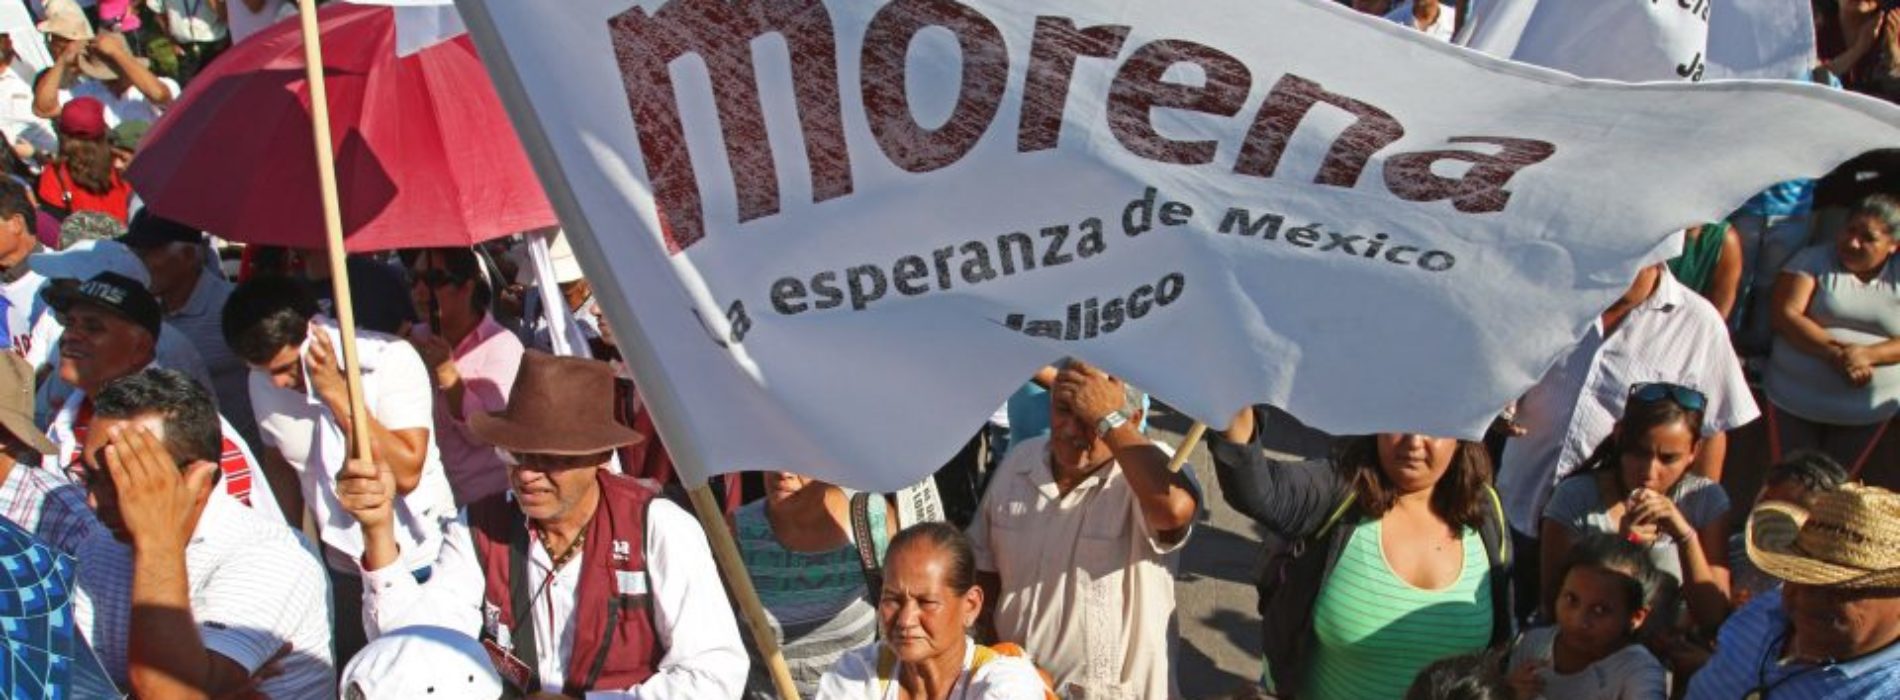 Candidatos a gobernador de Morena-PES y PT, entre los
favoritos en 8 de 9 estados: Integralia